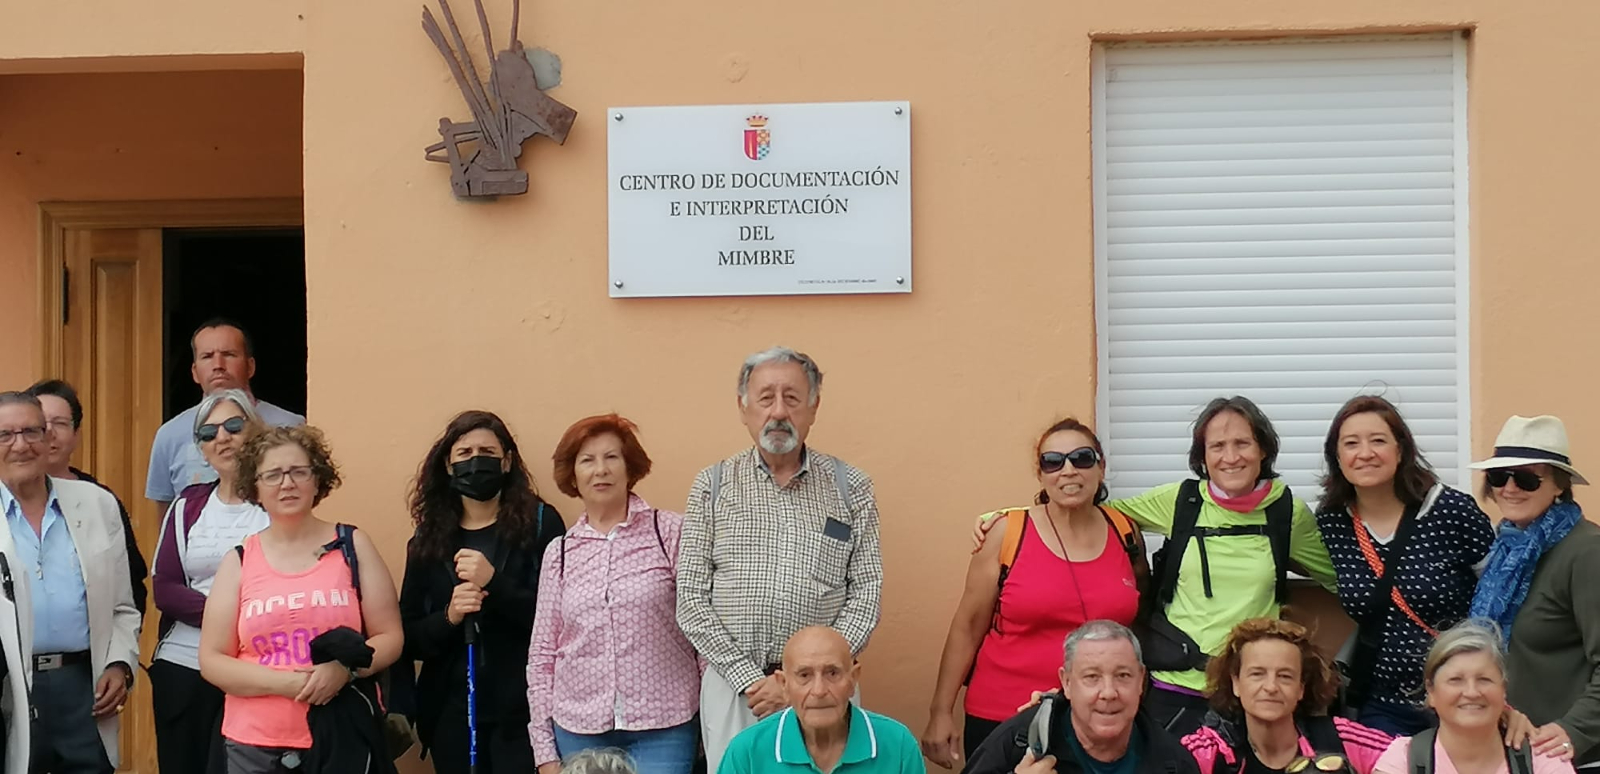 La cuarta Ruta de la asociación Nordeste de Salamanca descubría los oficios artesanos históricos de Babilafuente y Villoruela